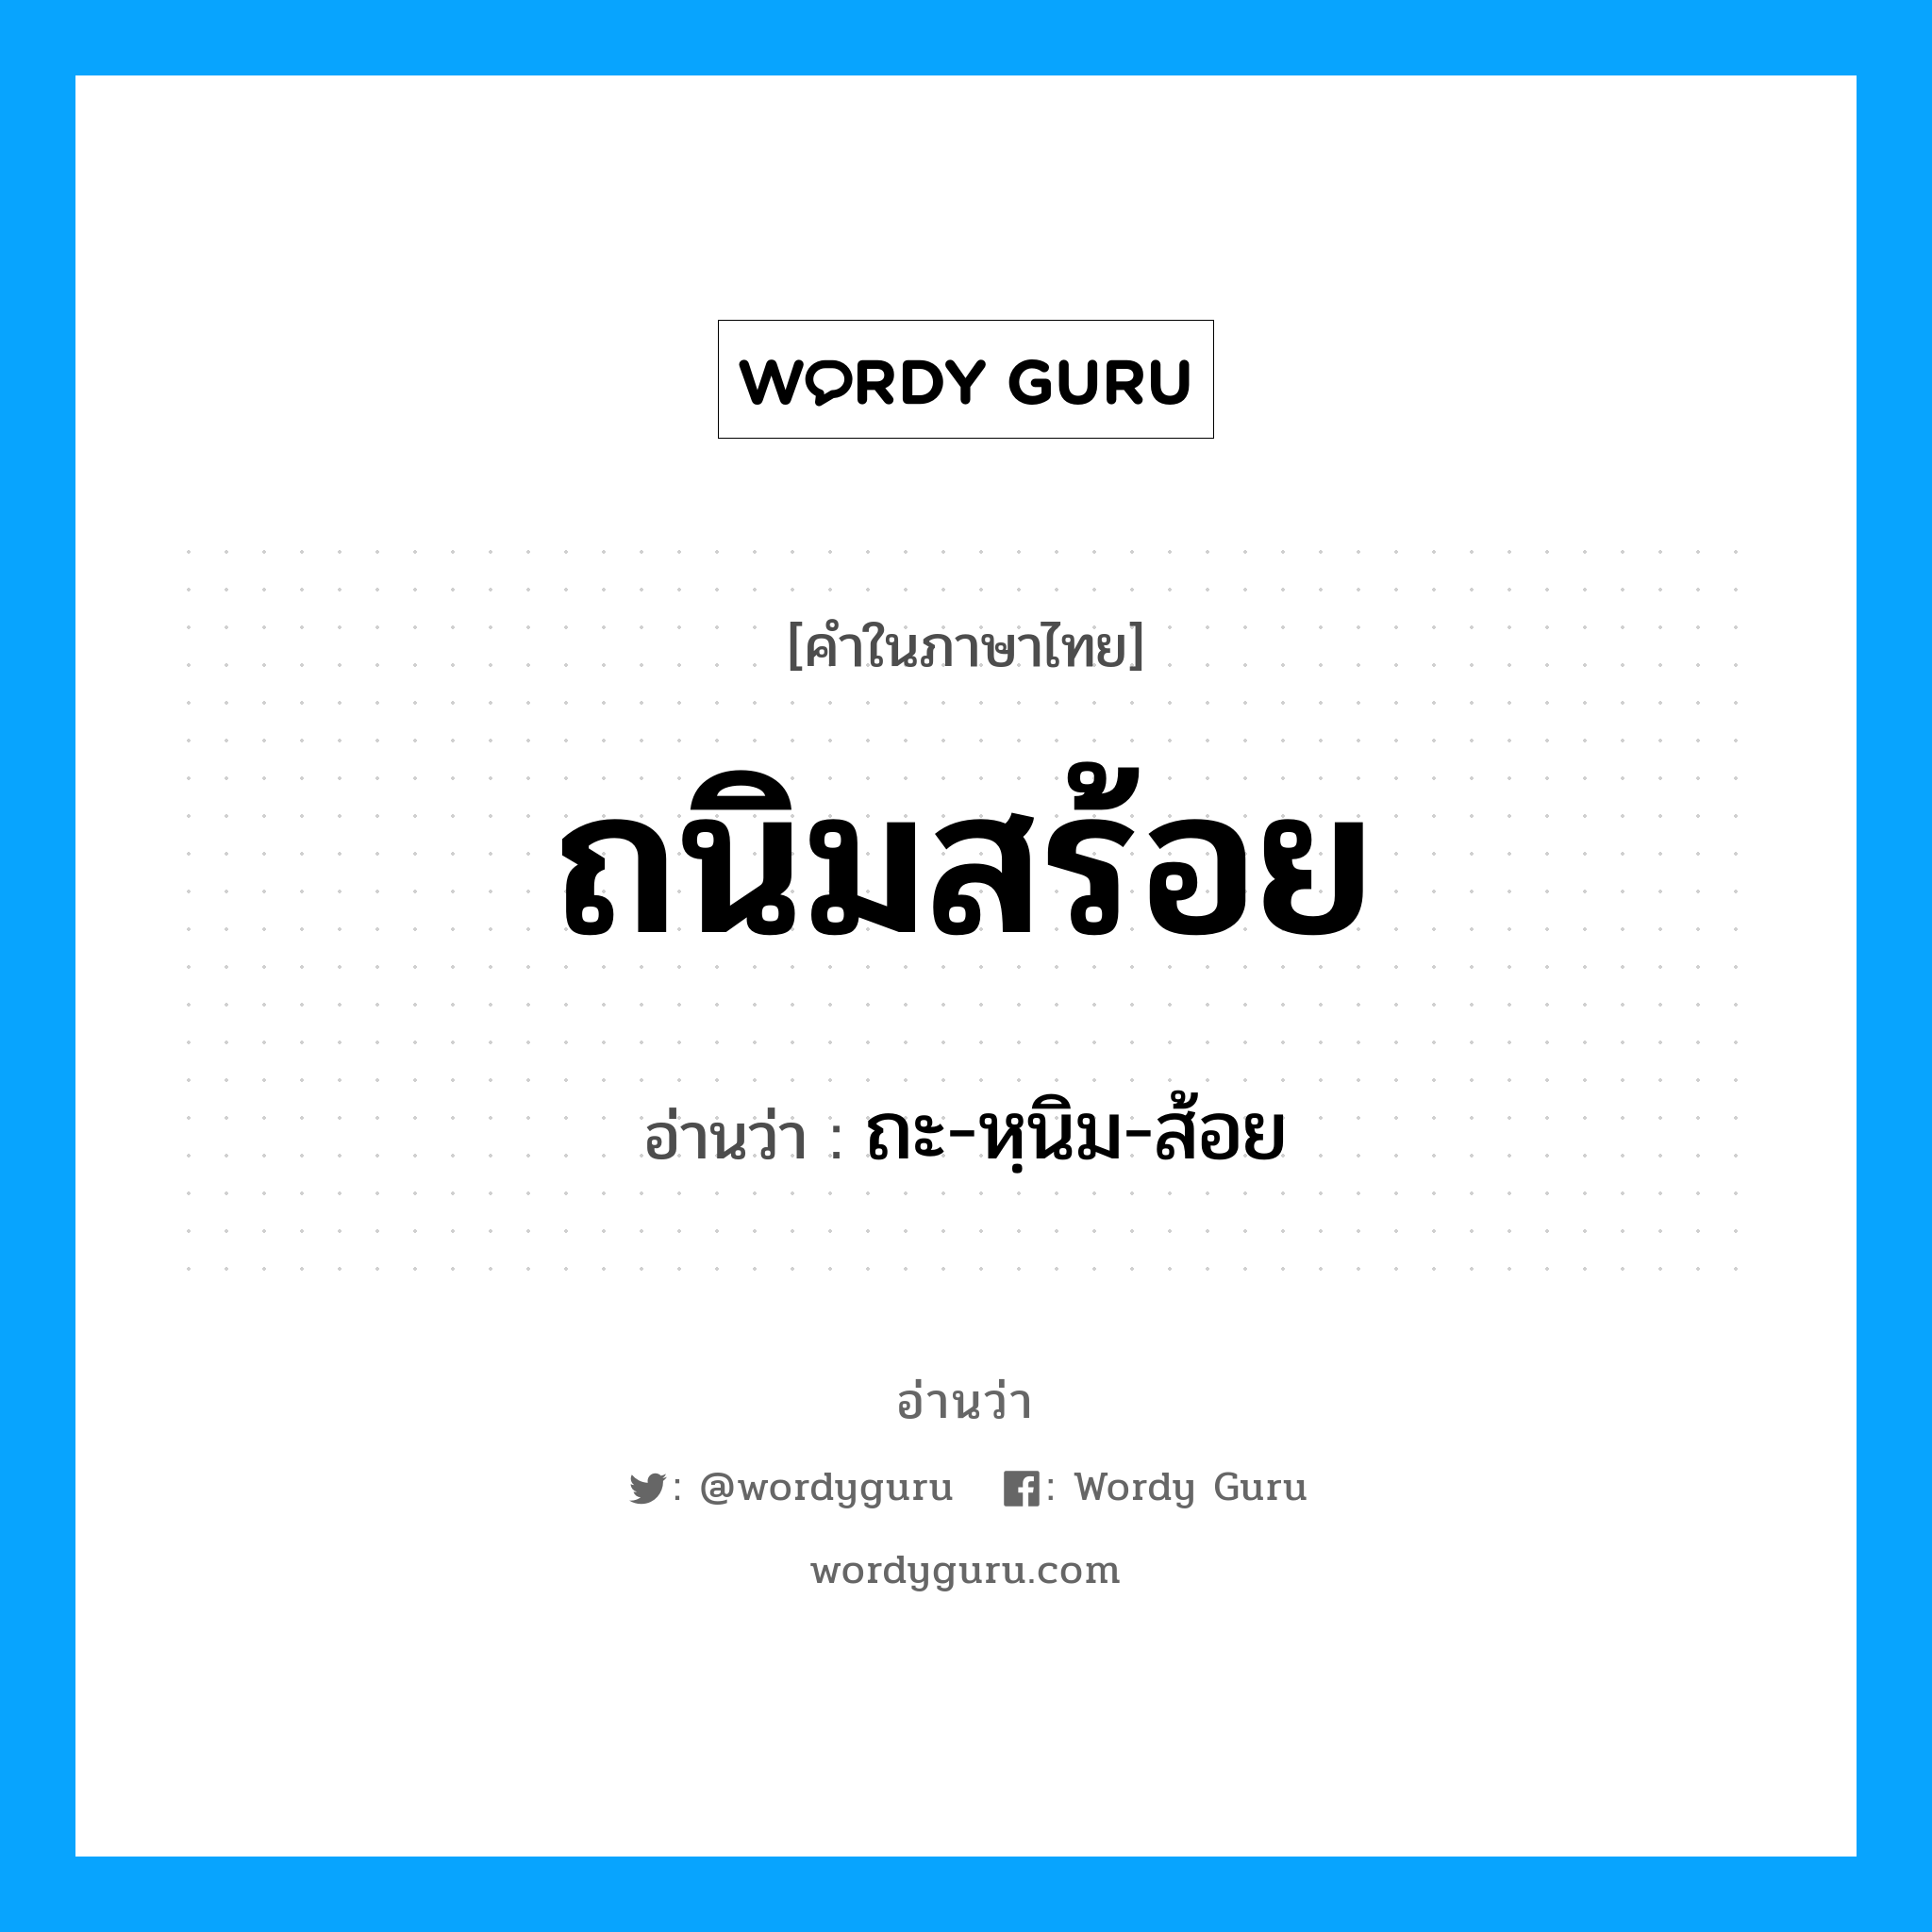 ถนิมสร้อย อ่านว่า?, คำในภาษาไทย ถนิมสร้อย อ่านว่า ถะ-หฺนิม-ส้อย